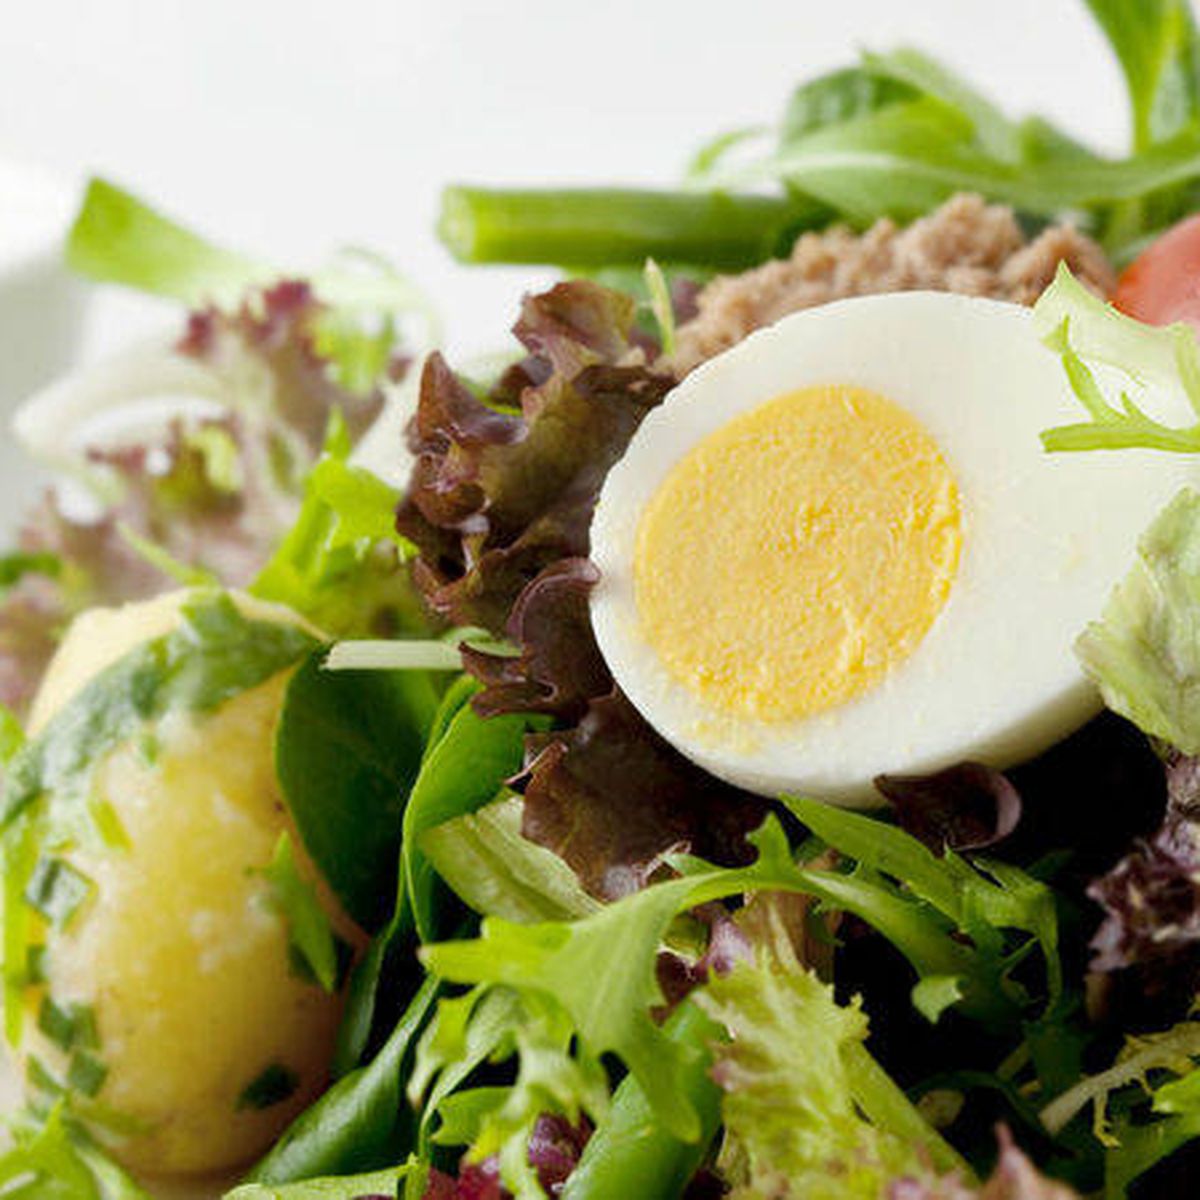 Si te importa tu salud, deja de cocer los huevos junto a las patatas